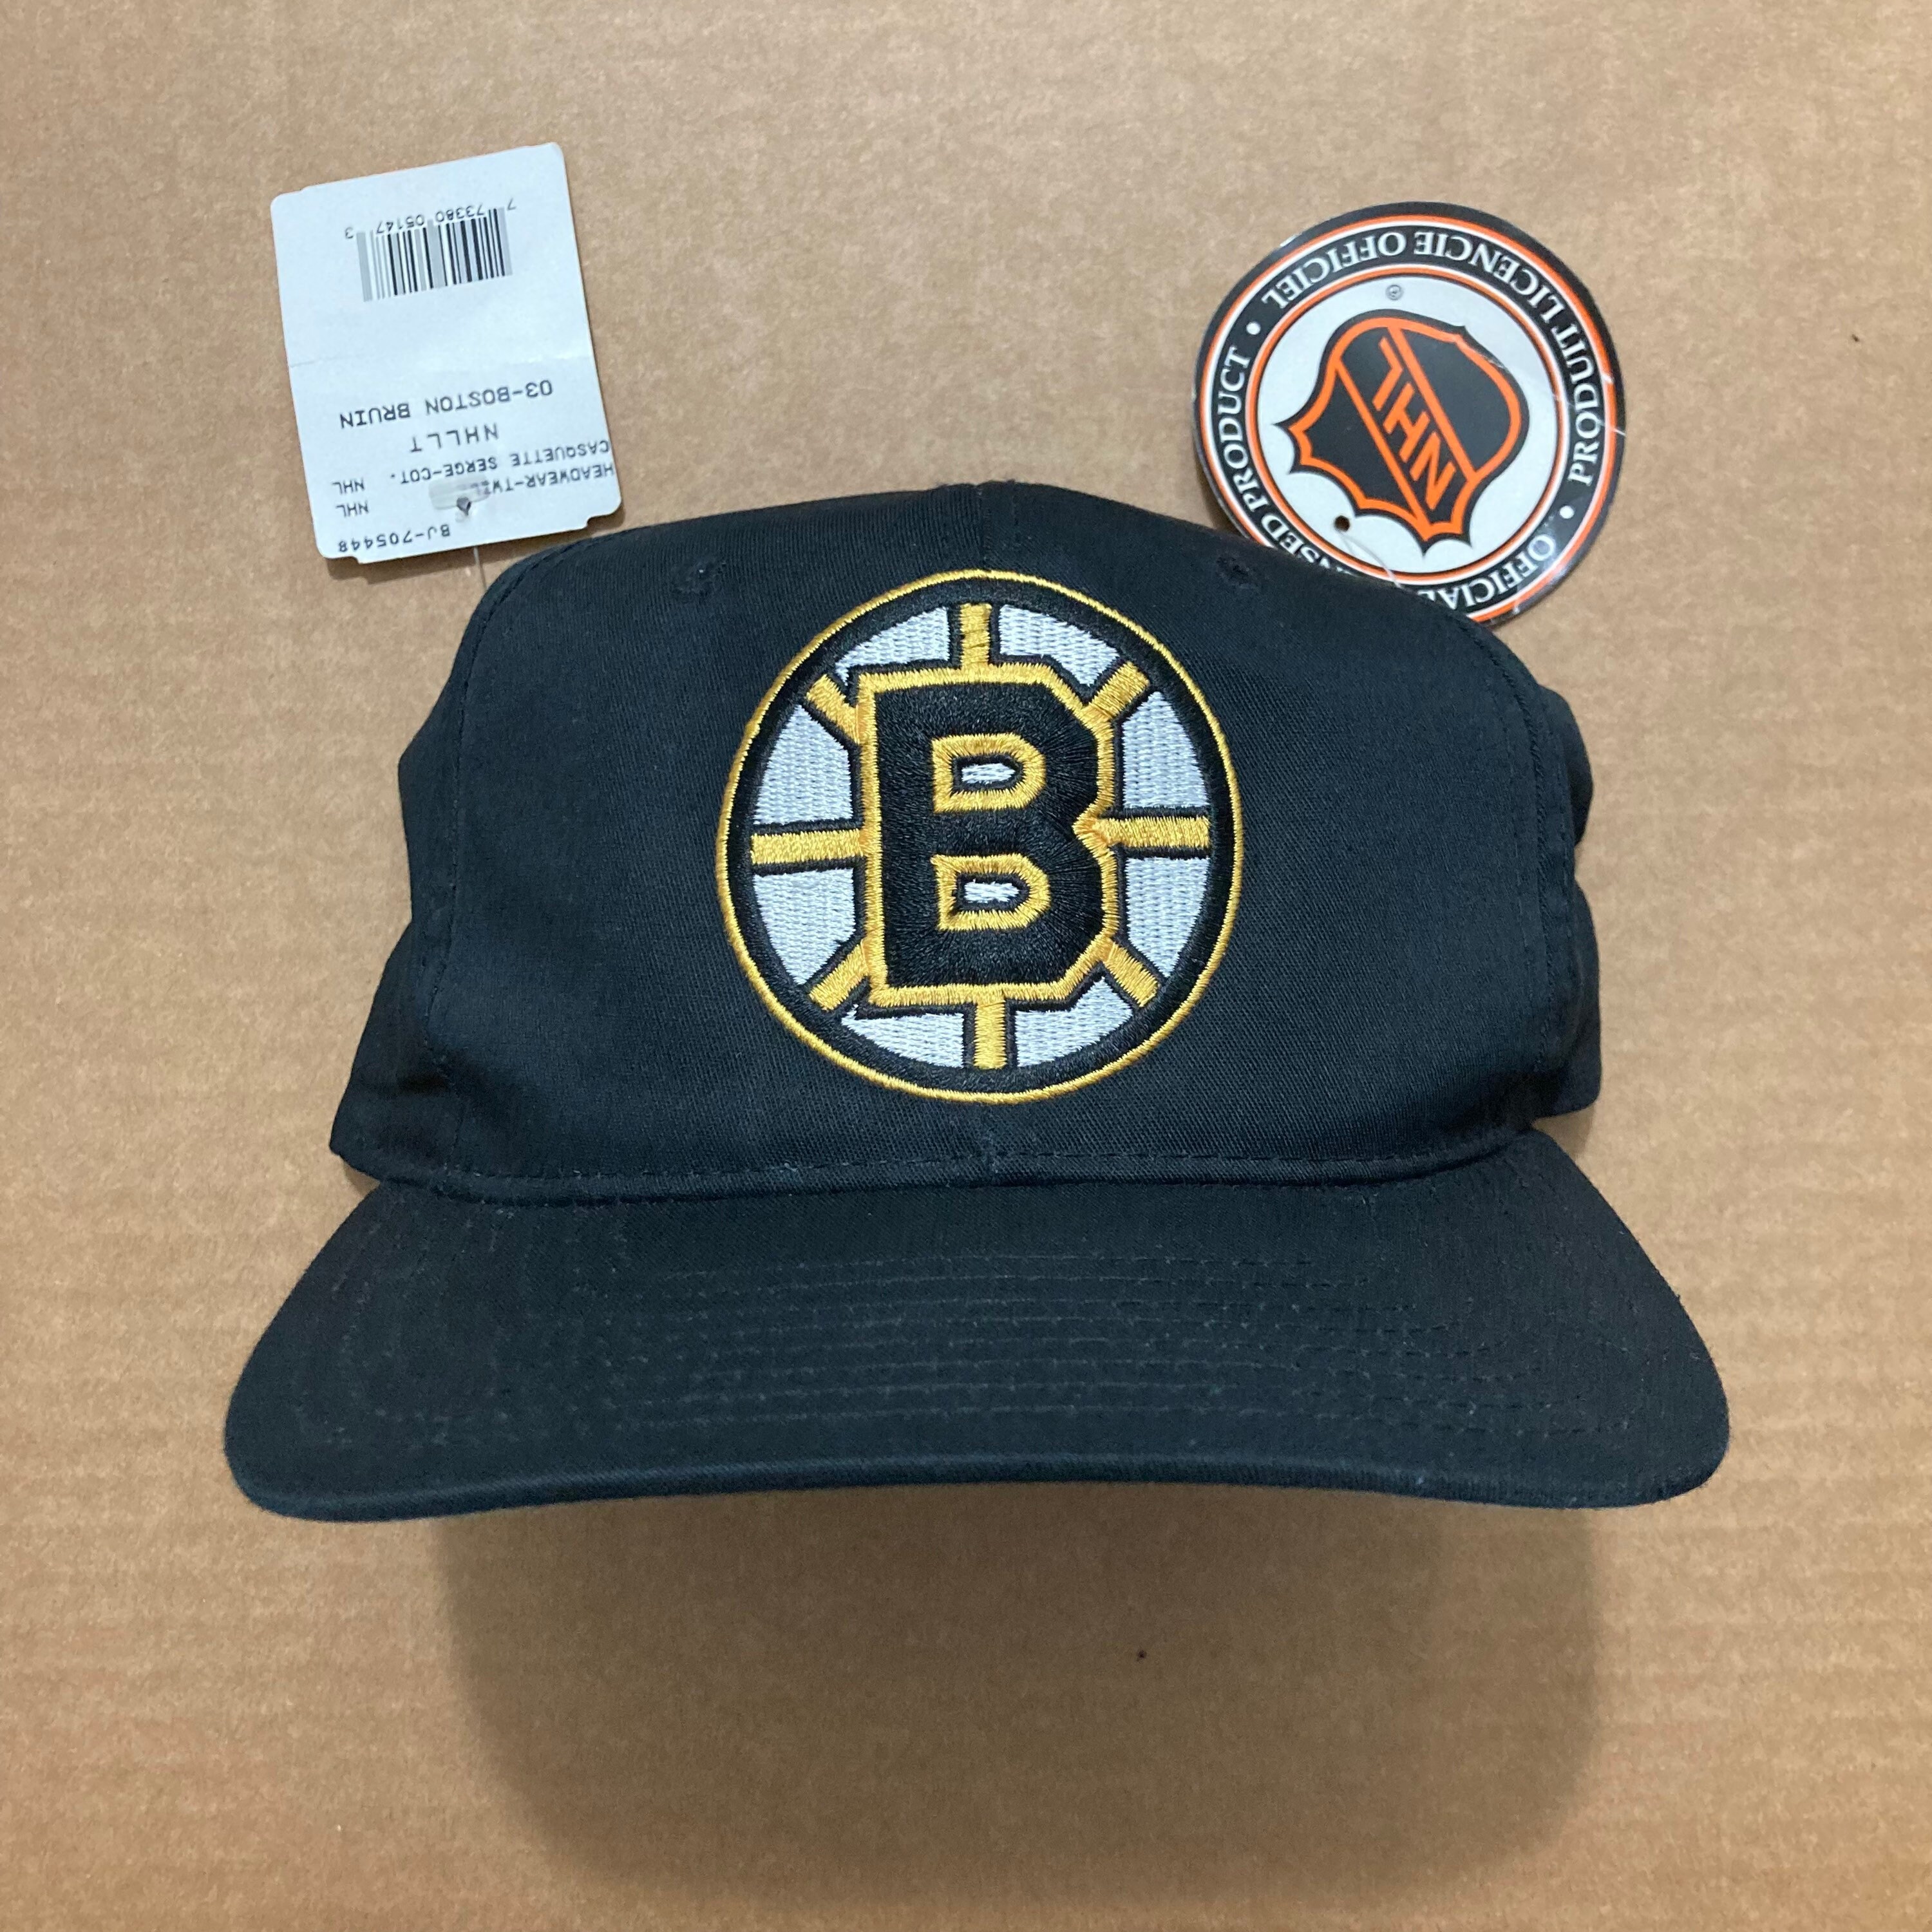 NHL Boston Bruins Vintage Unstructured Adjustable Hat